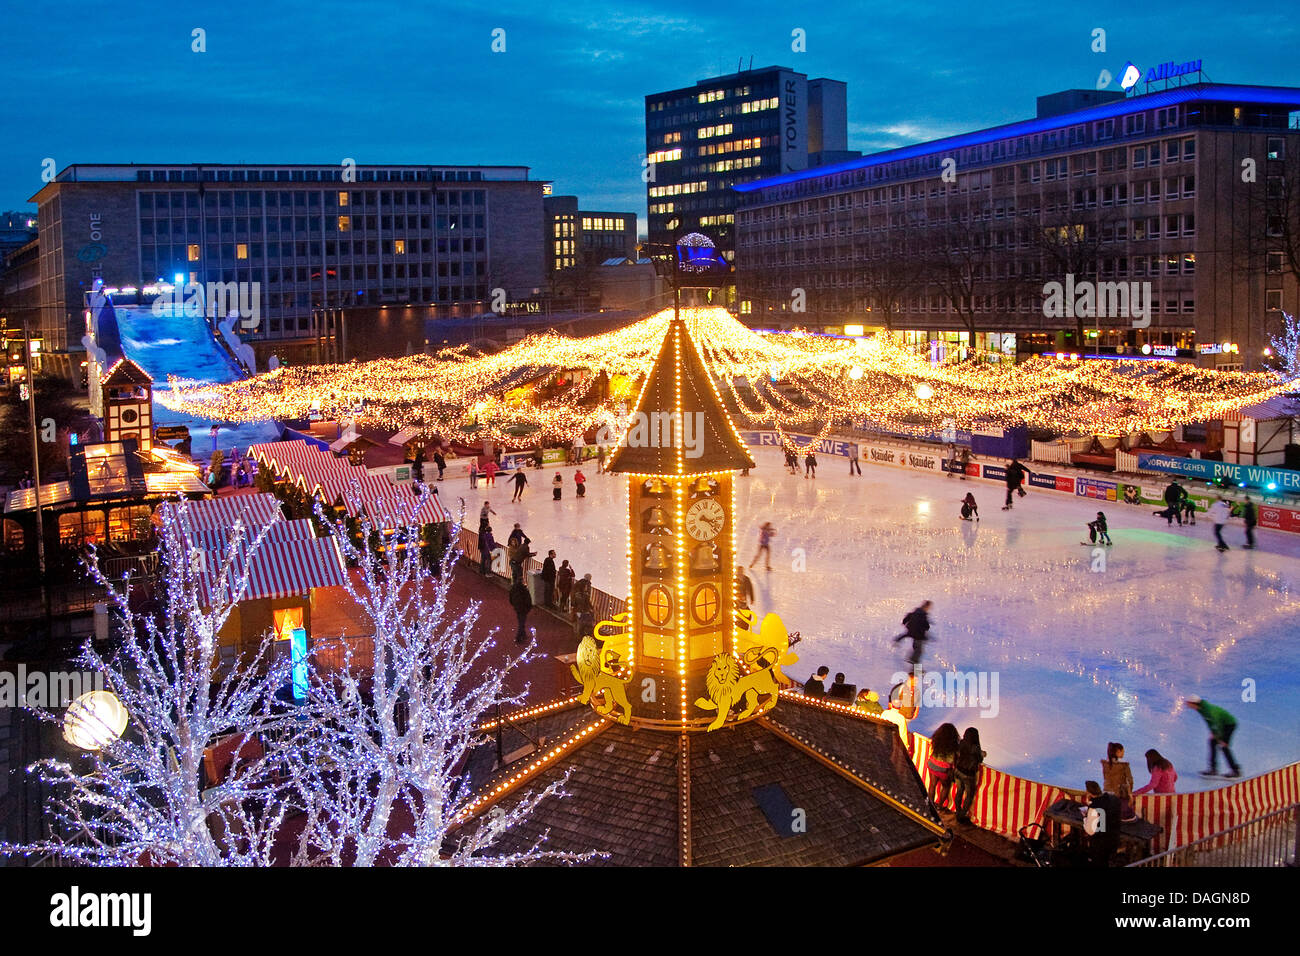 Essen su ghiaccio evento presso il Kennedy illuminato piazza nel centro della città di sera, in Germania, in Renania settentrionale-Vestfalia, la zona della Ruhr, Essen Foto Stock